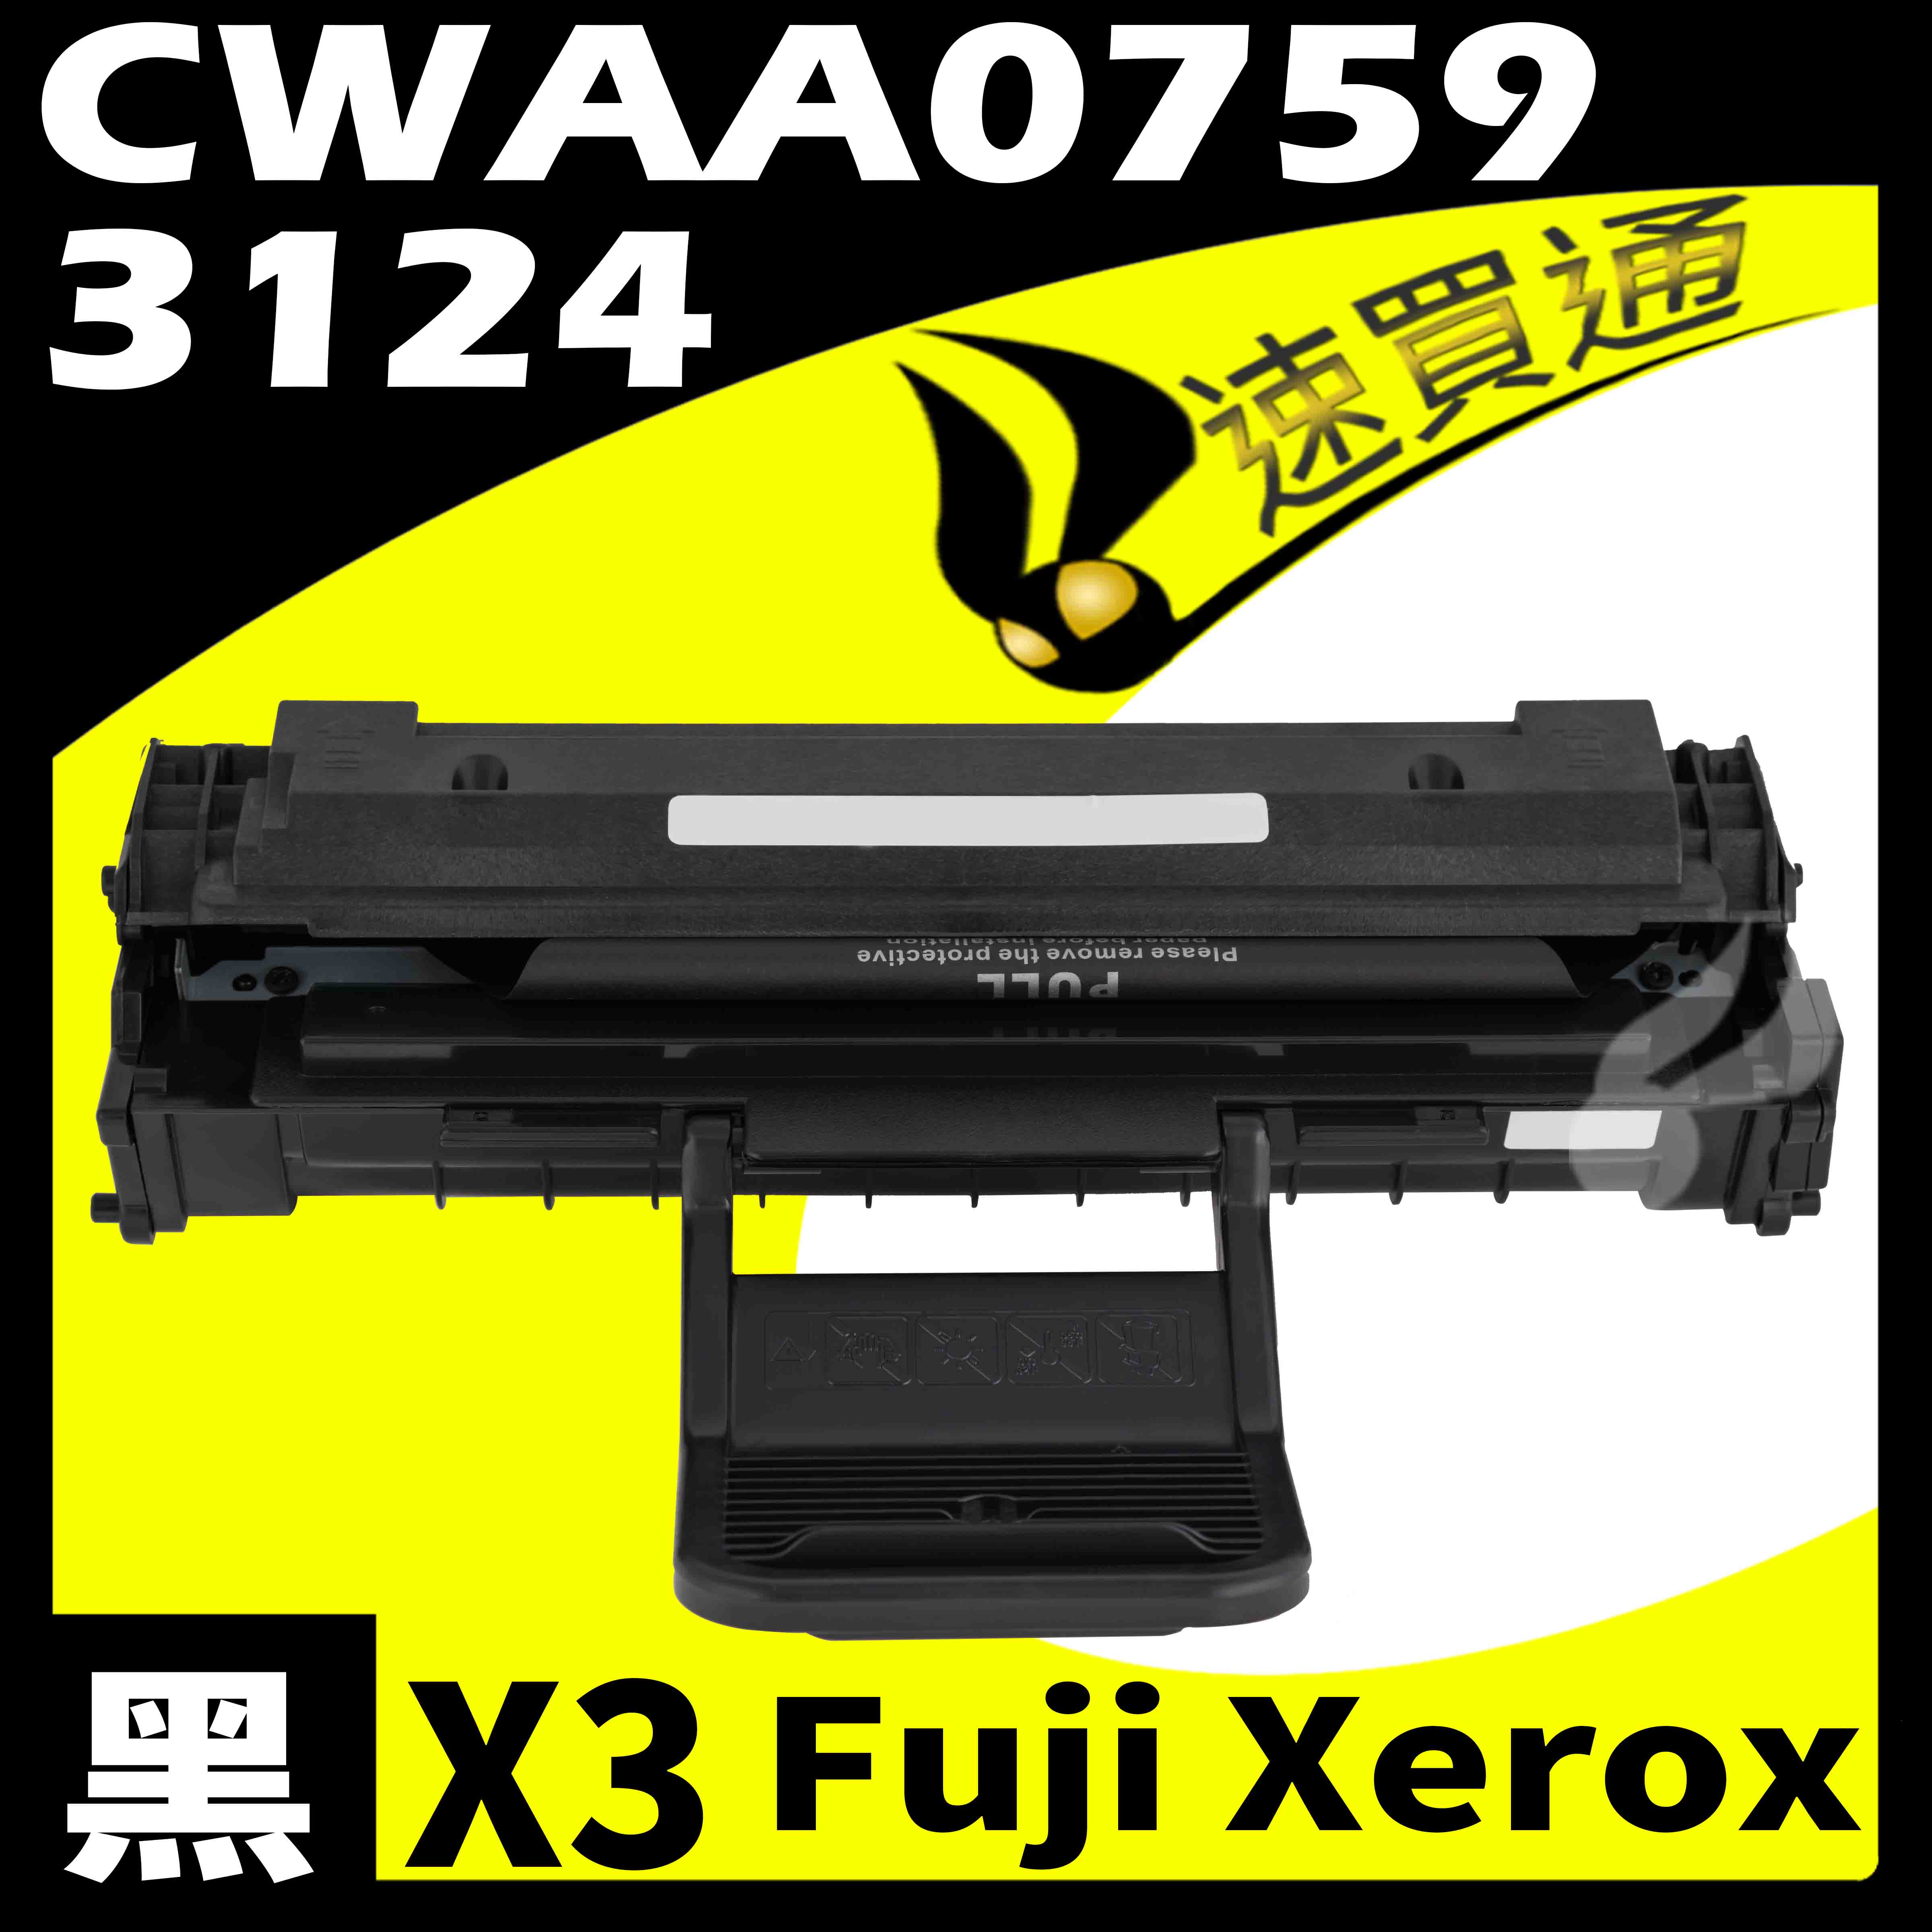 【速買通】超值3件組 Fuji Xerox 3124/CWAA0759 相容碳粉匣